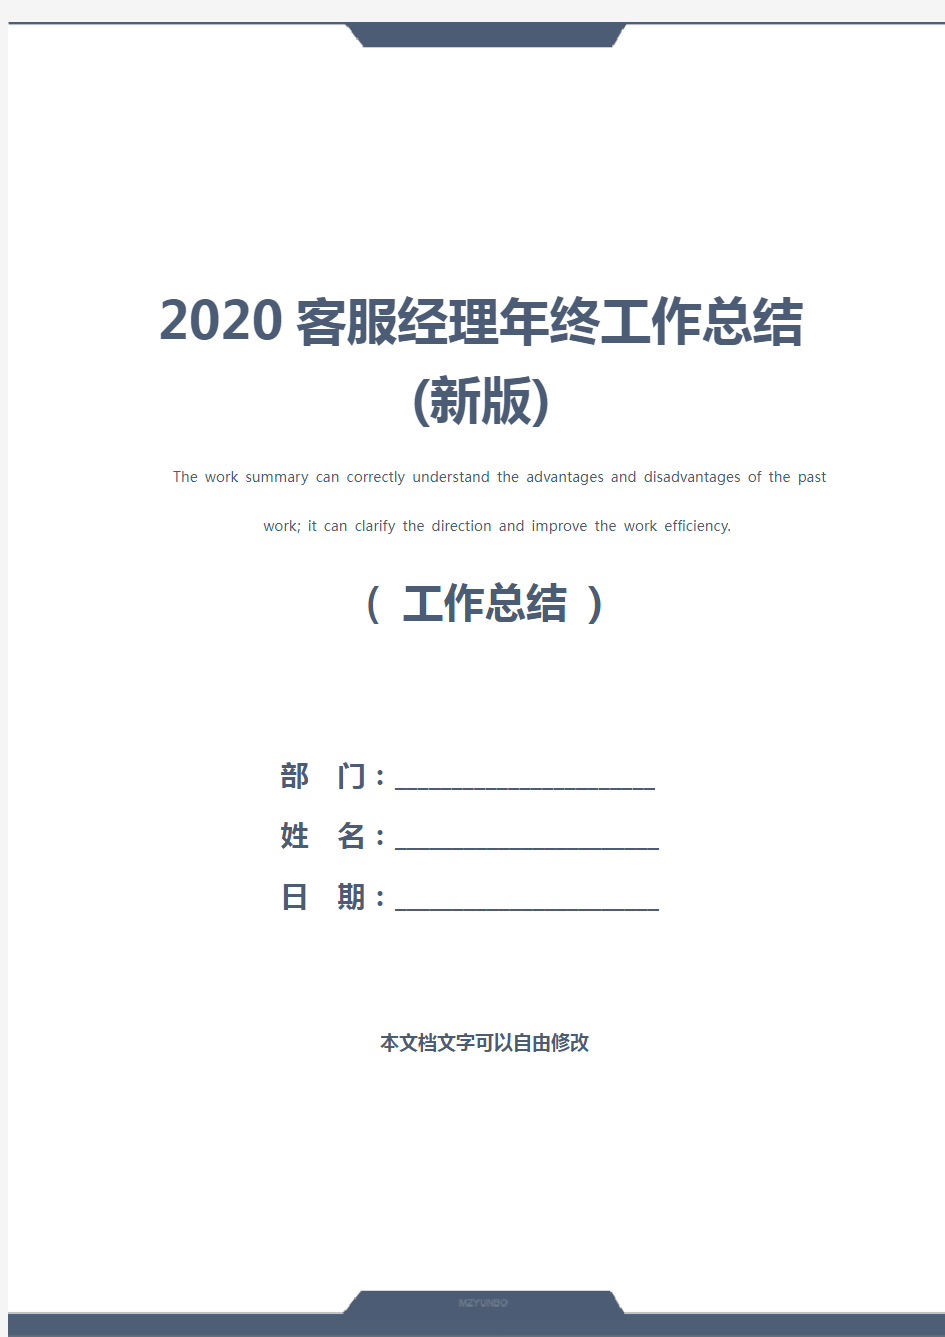 2020客服经理年终工作总结(新版)